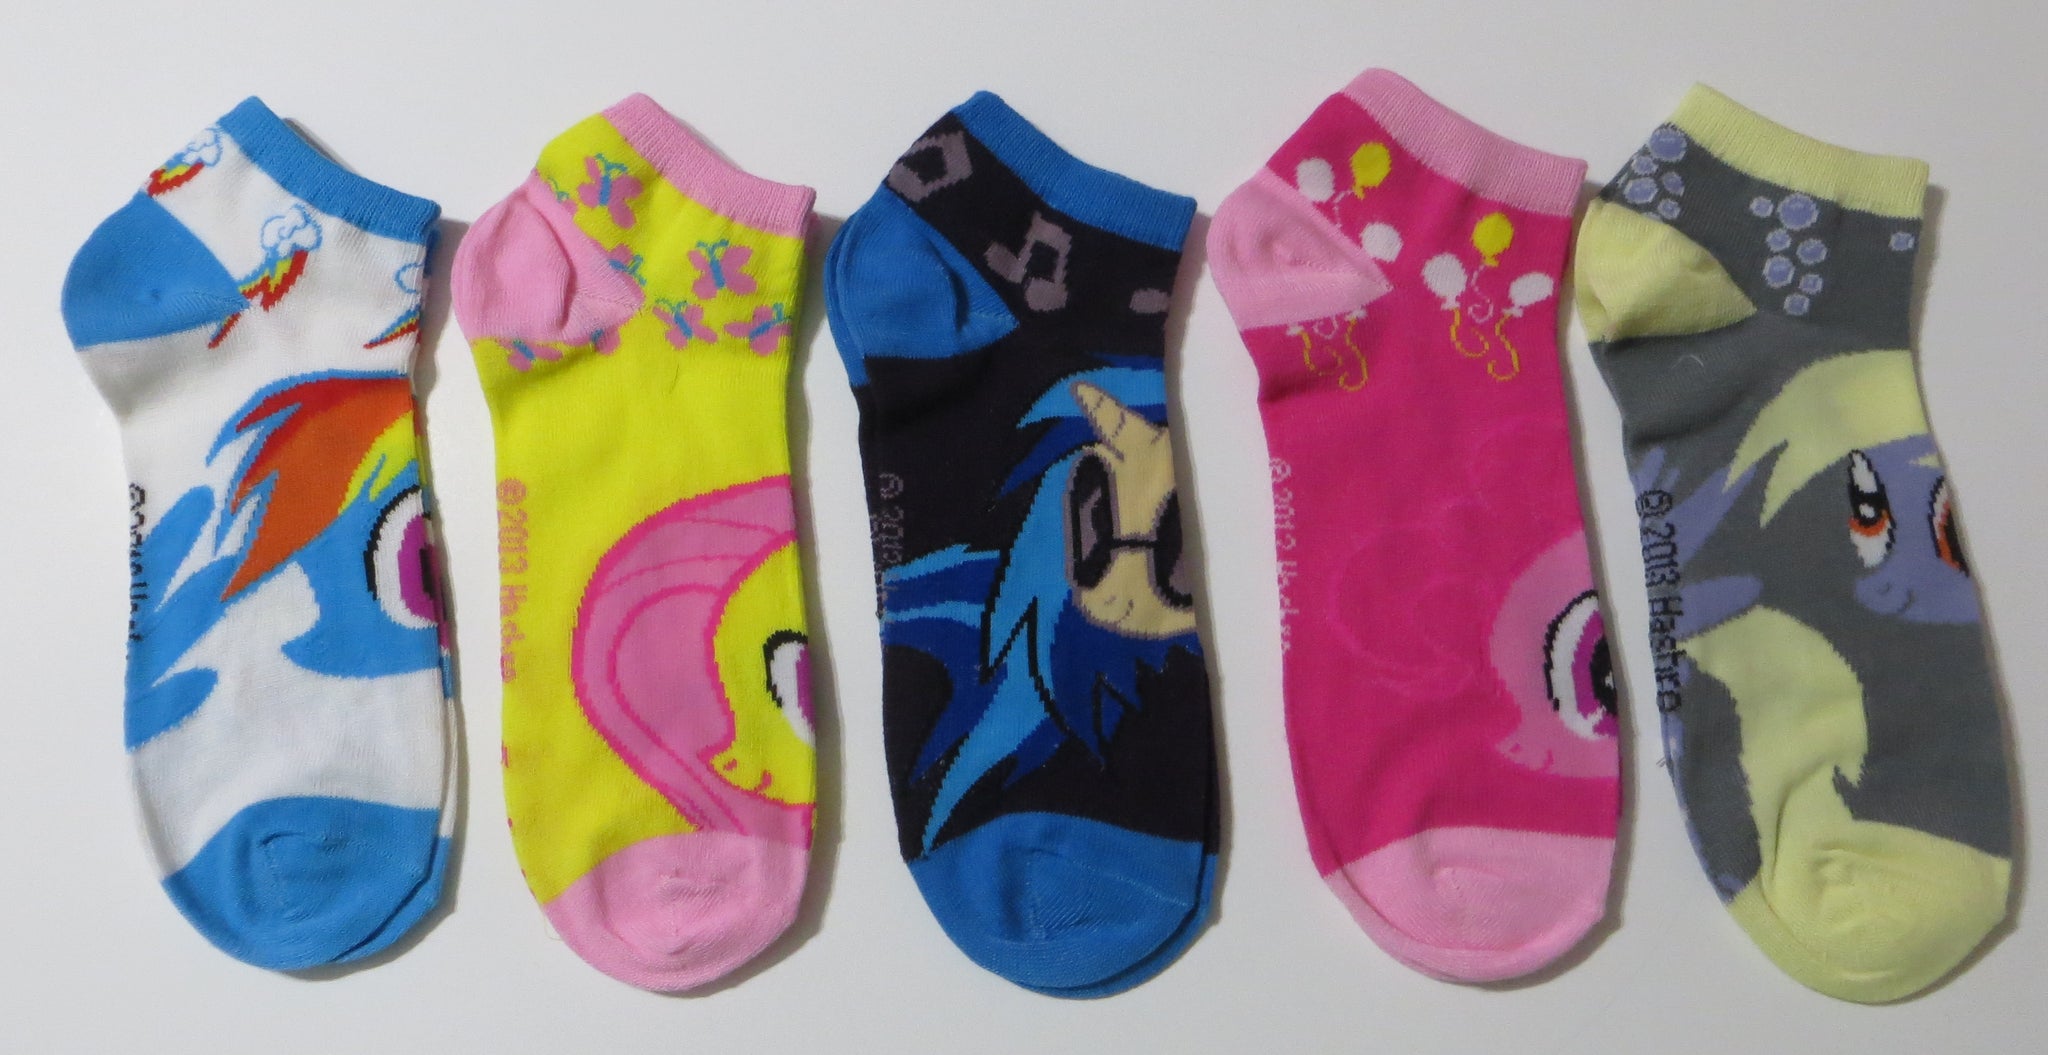 My Little Pony Ankle Socks - 5 Pack Set for Women's Sizes 6-10